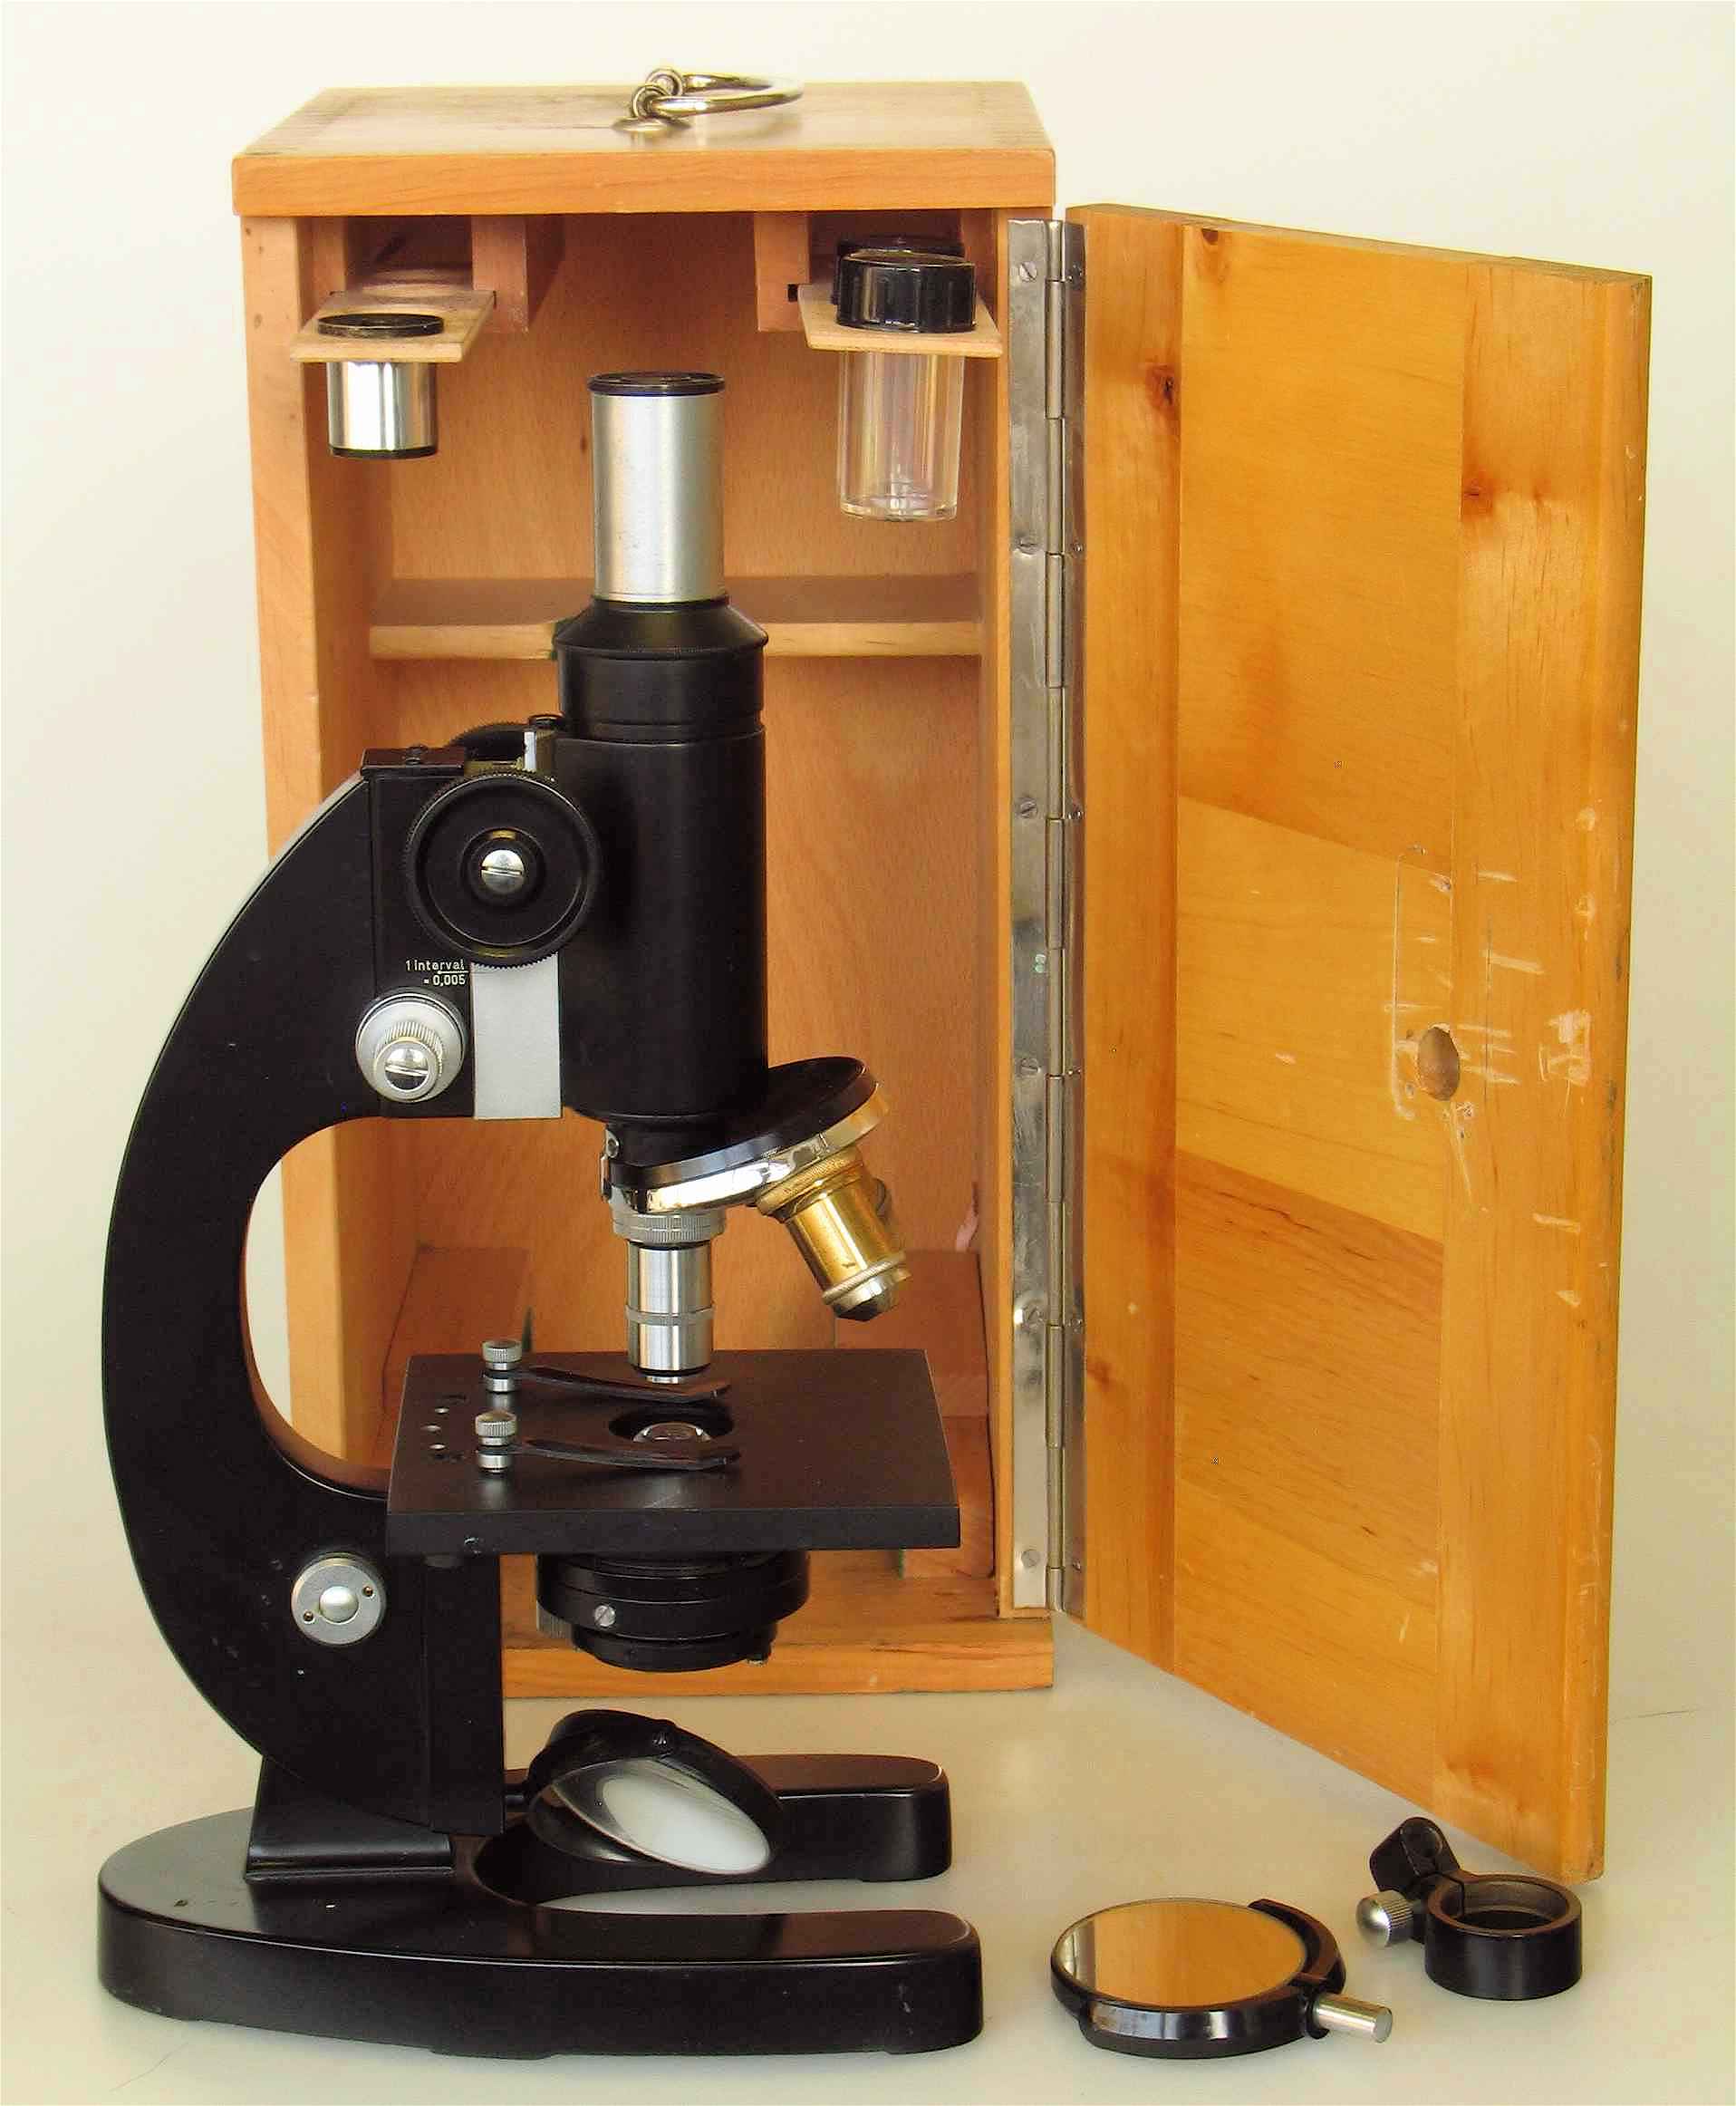 Microscope composé
(modèle scolaire)